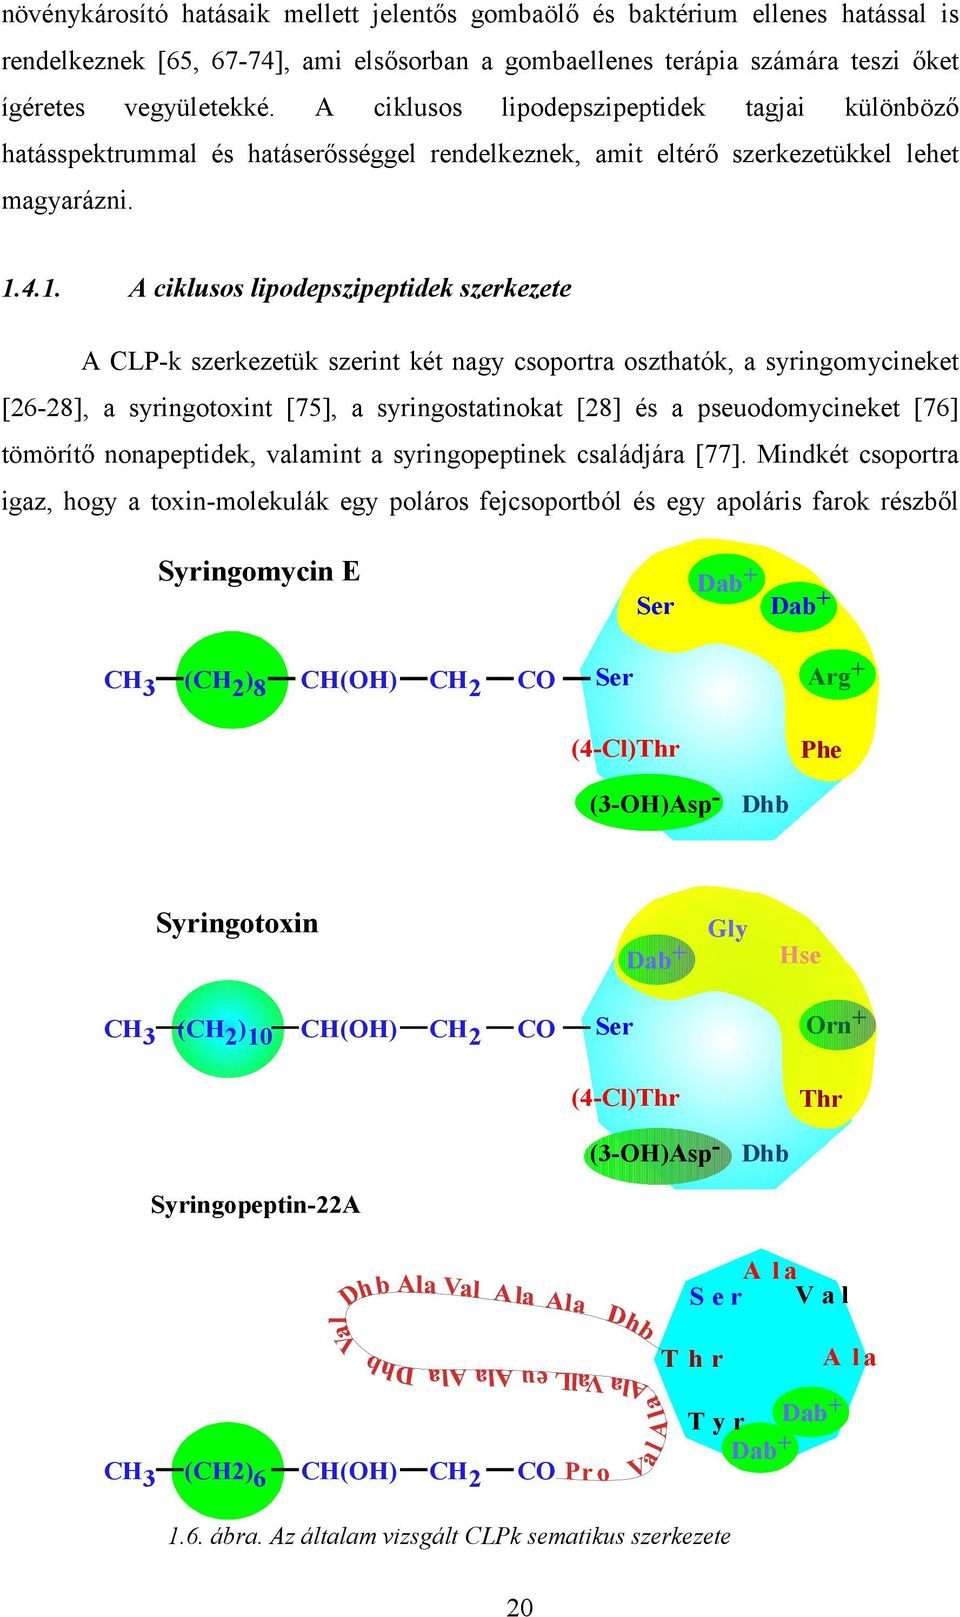 4.1. A ciklusos lipodepszipeptidek szerkezete A CLP-k szerkezetük szerint két nagy csoportra oszthatók, a syringomycineket [26-28], a syringotoxint [75], a syringostatinokat [28] és a